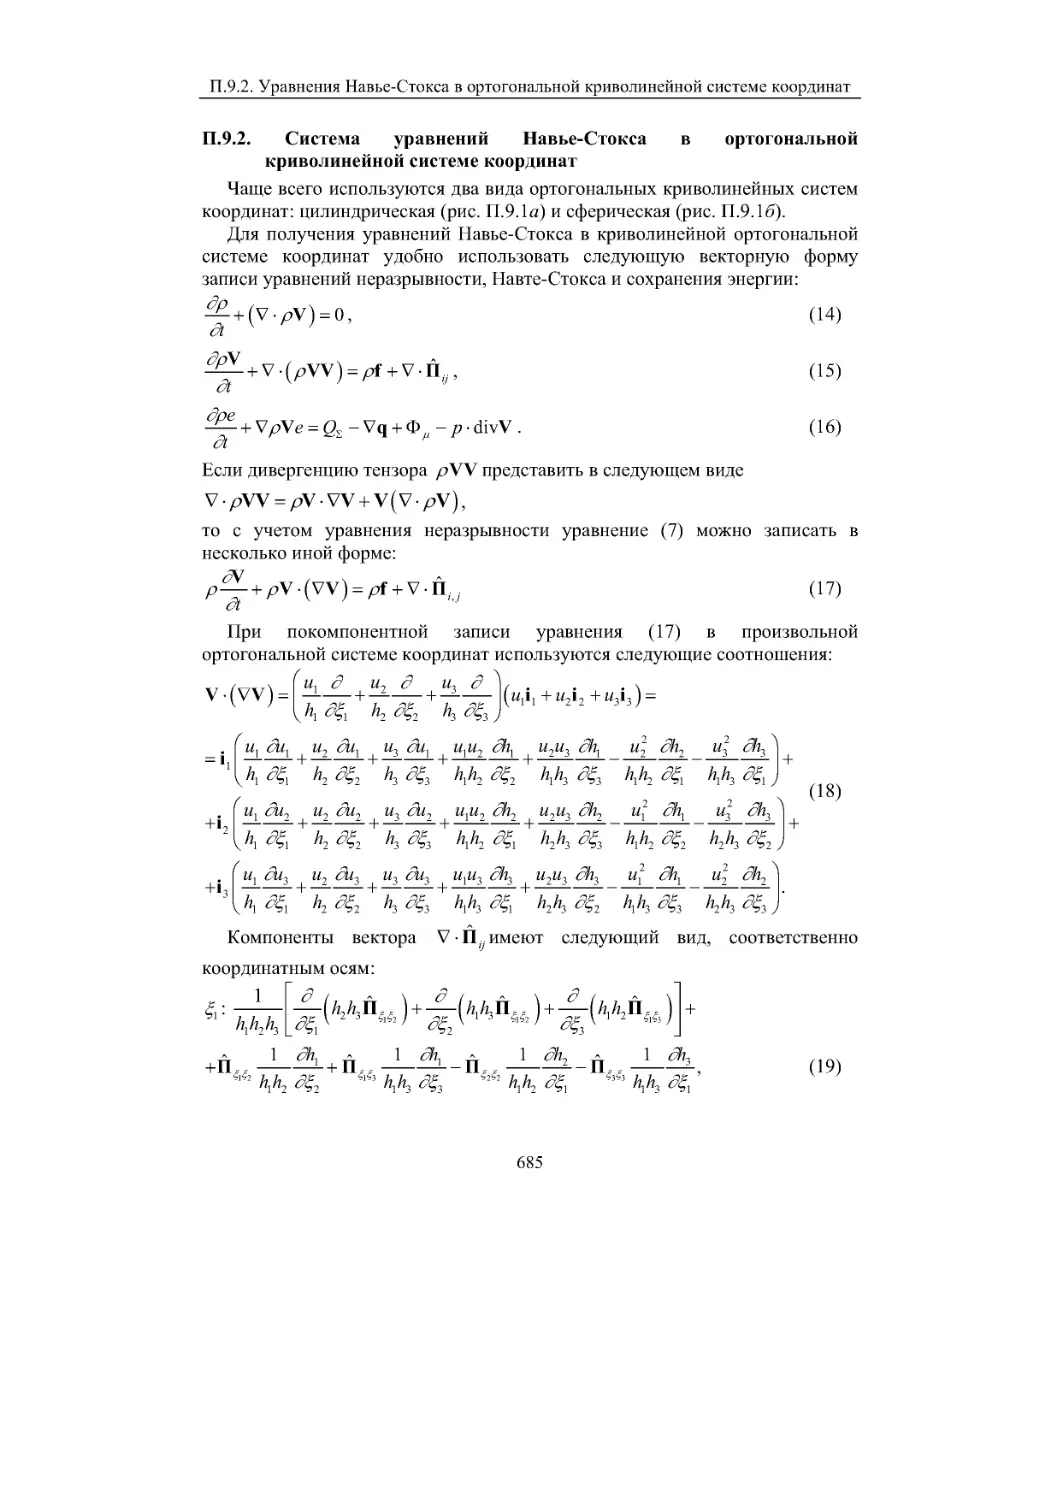 П.9.2. Система уравнений Навье-Стокса в ортогональной криволинейной системе координат